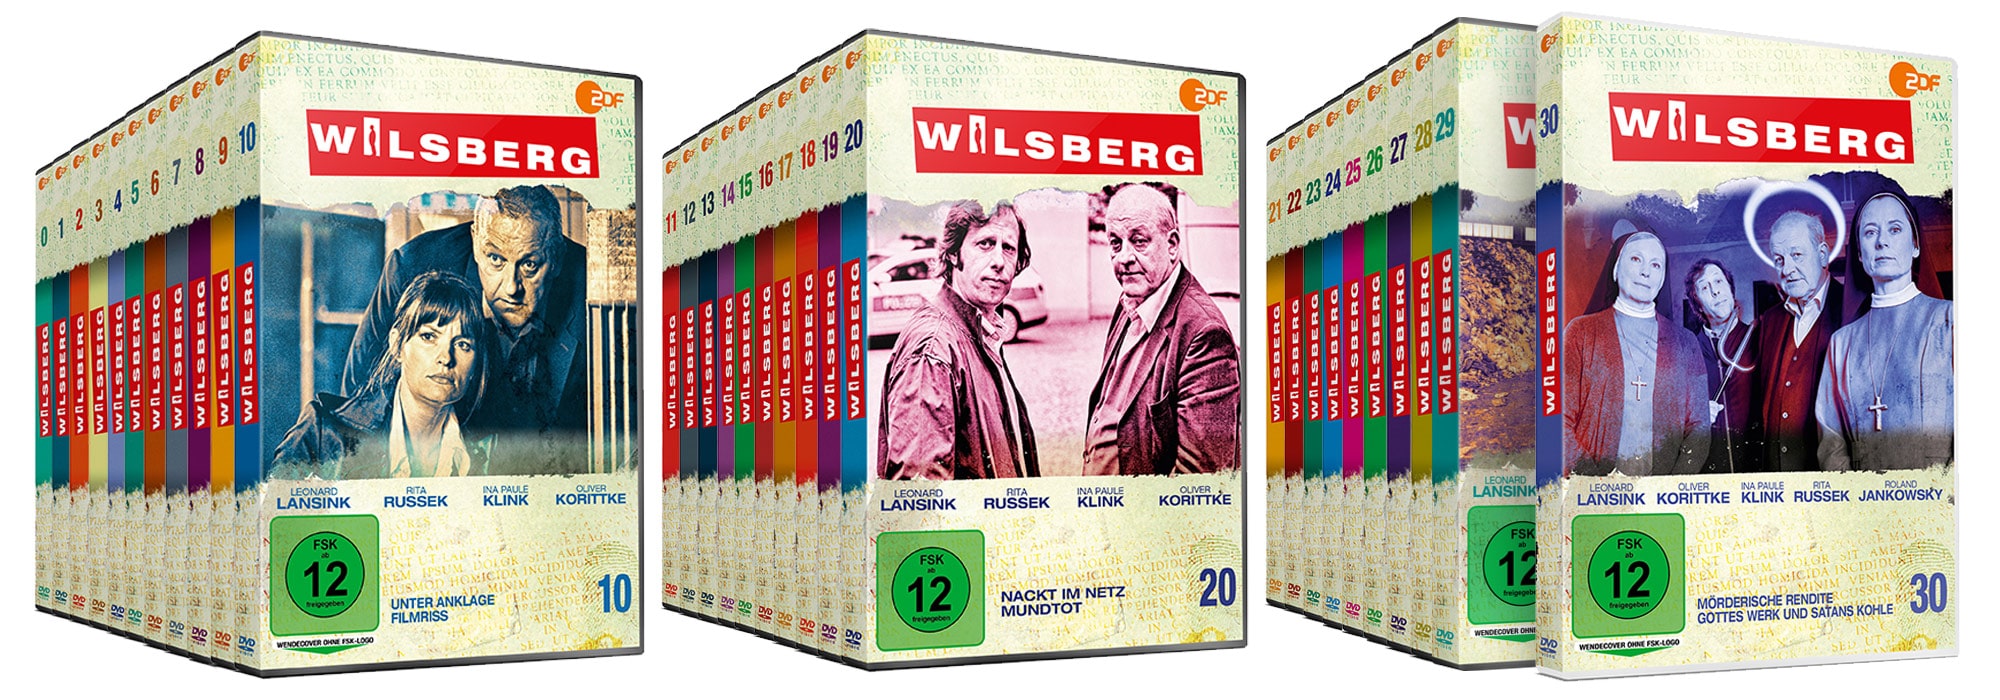 Wilsberg - Artwork - Home Video - Packaging - Sammlerbox